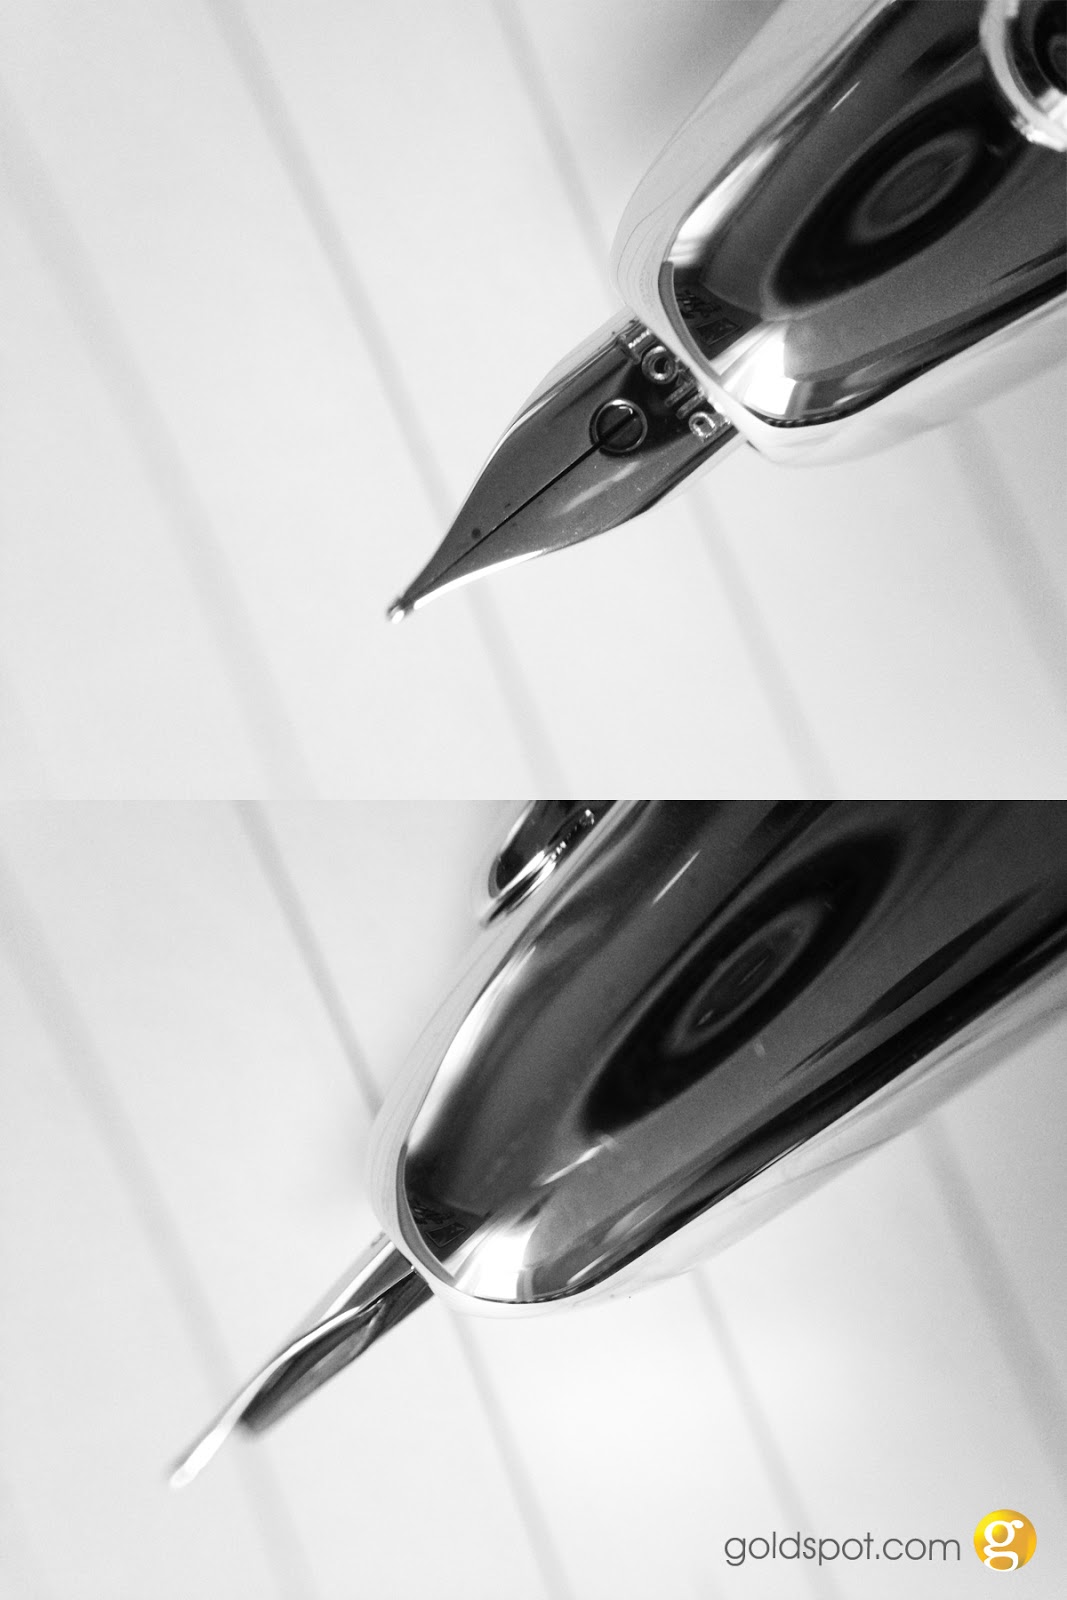 Sensa Metro Gold Ballpoint Pen in Black Cherry Burgundy - Goldspot Pens